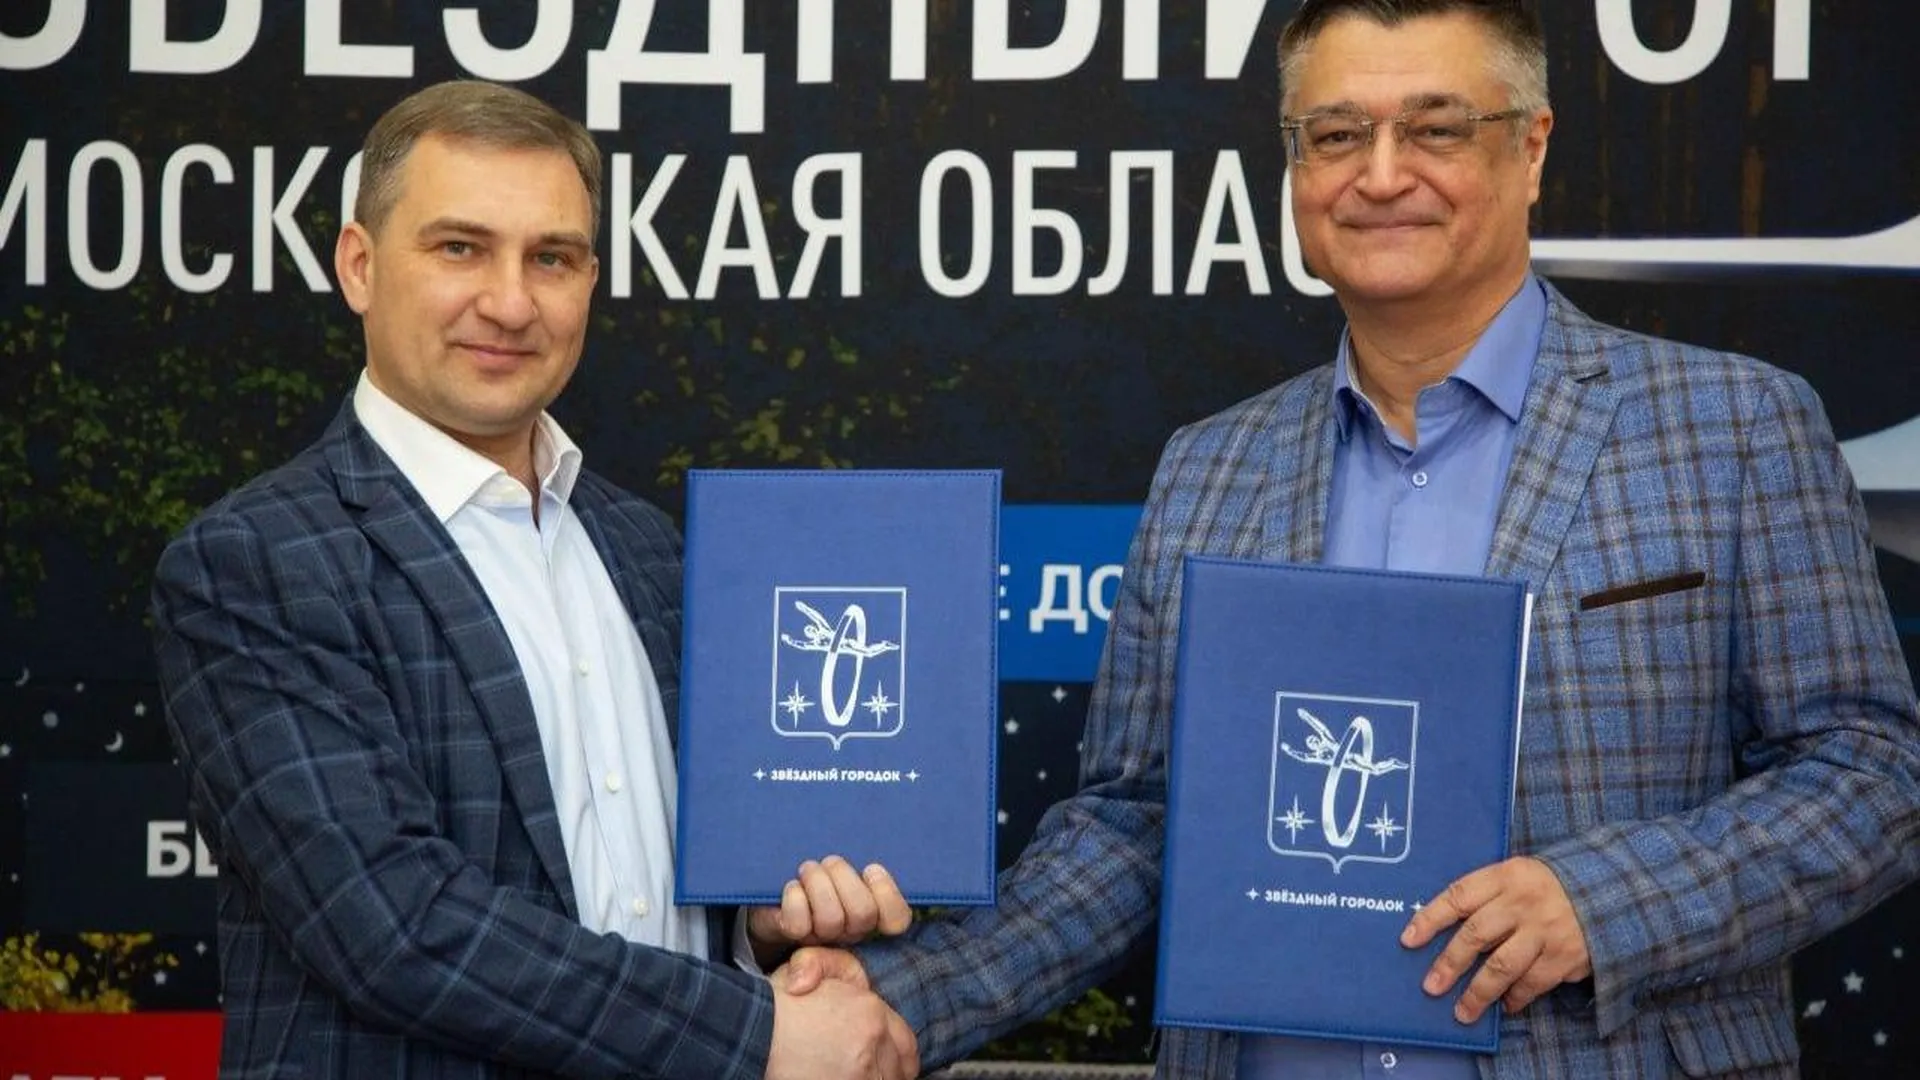 Шахматный клуб Сергея Карякина откроется в Звездном городке